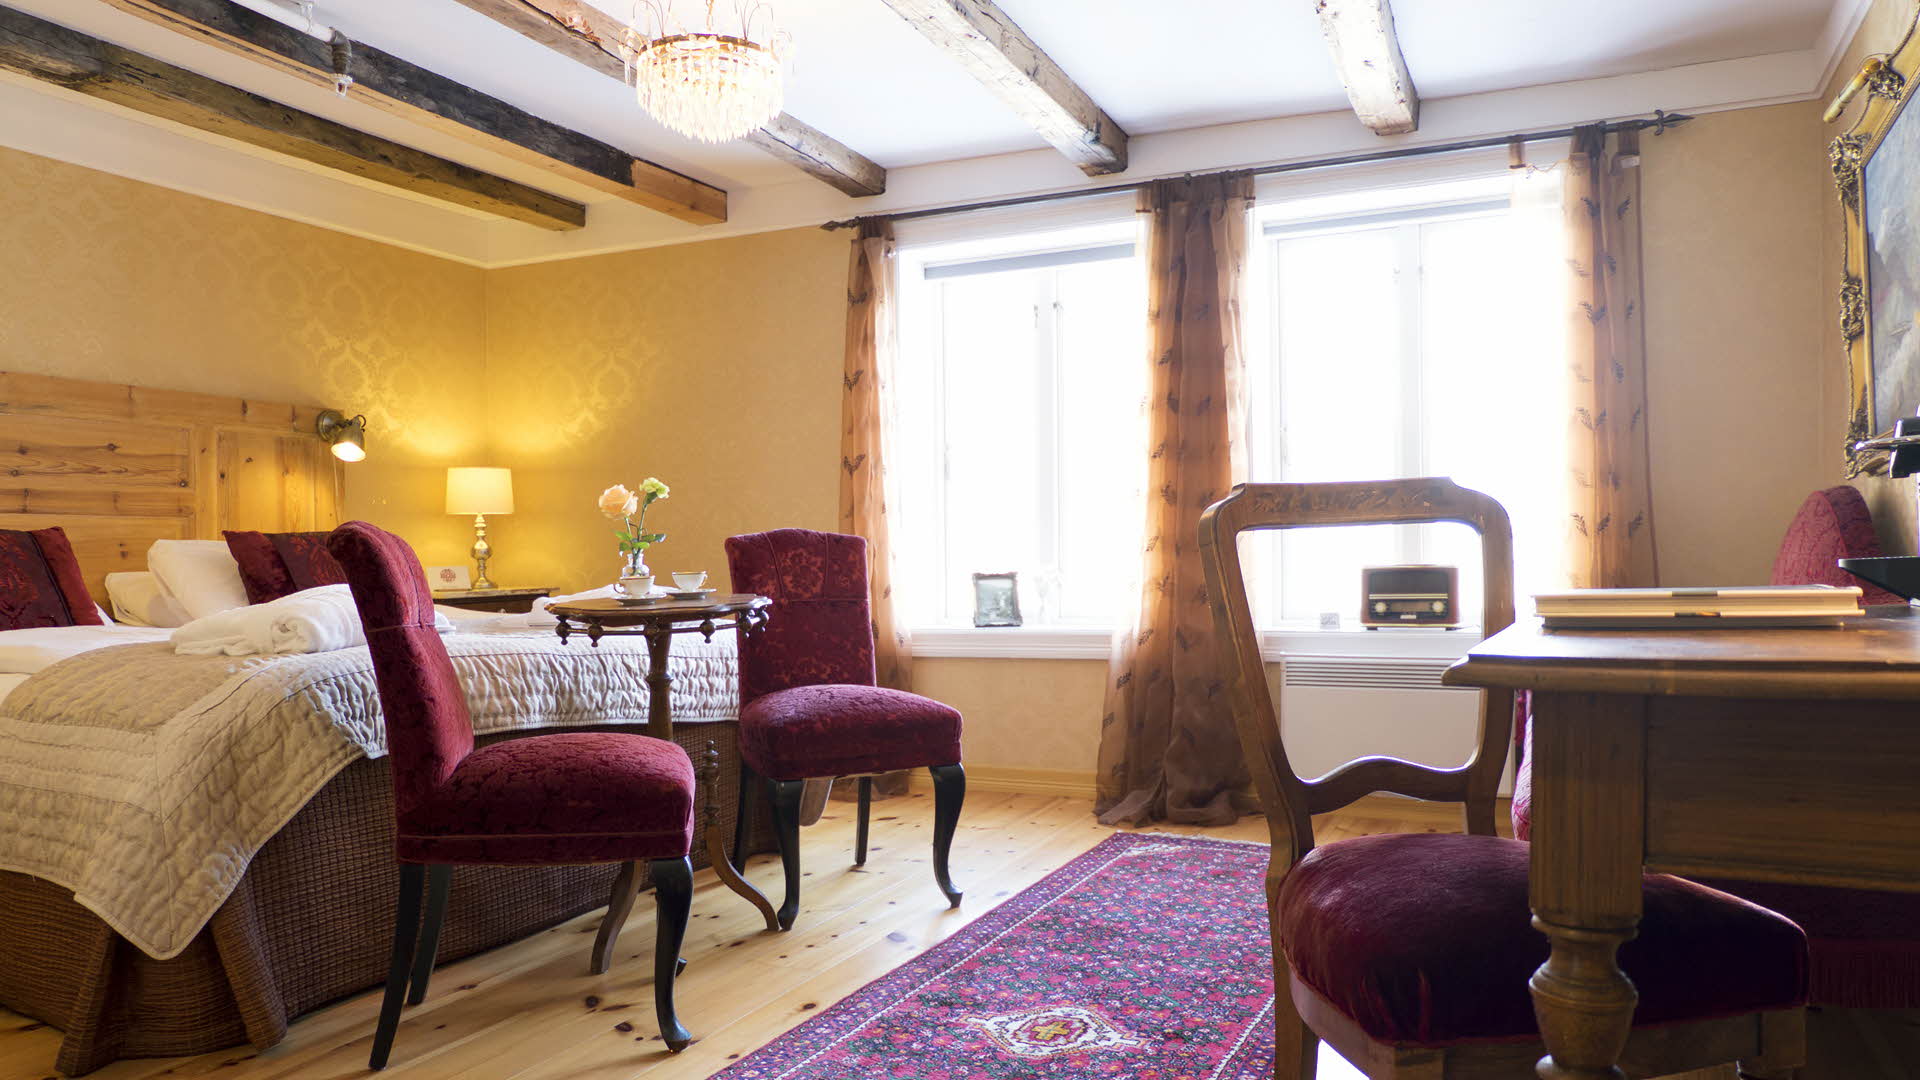 Historisches Zimmer mit gelben Wänden und weinroten Polstermöbeln im Hotel Fretheim in Flåm